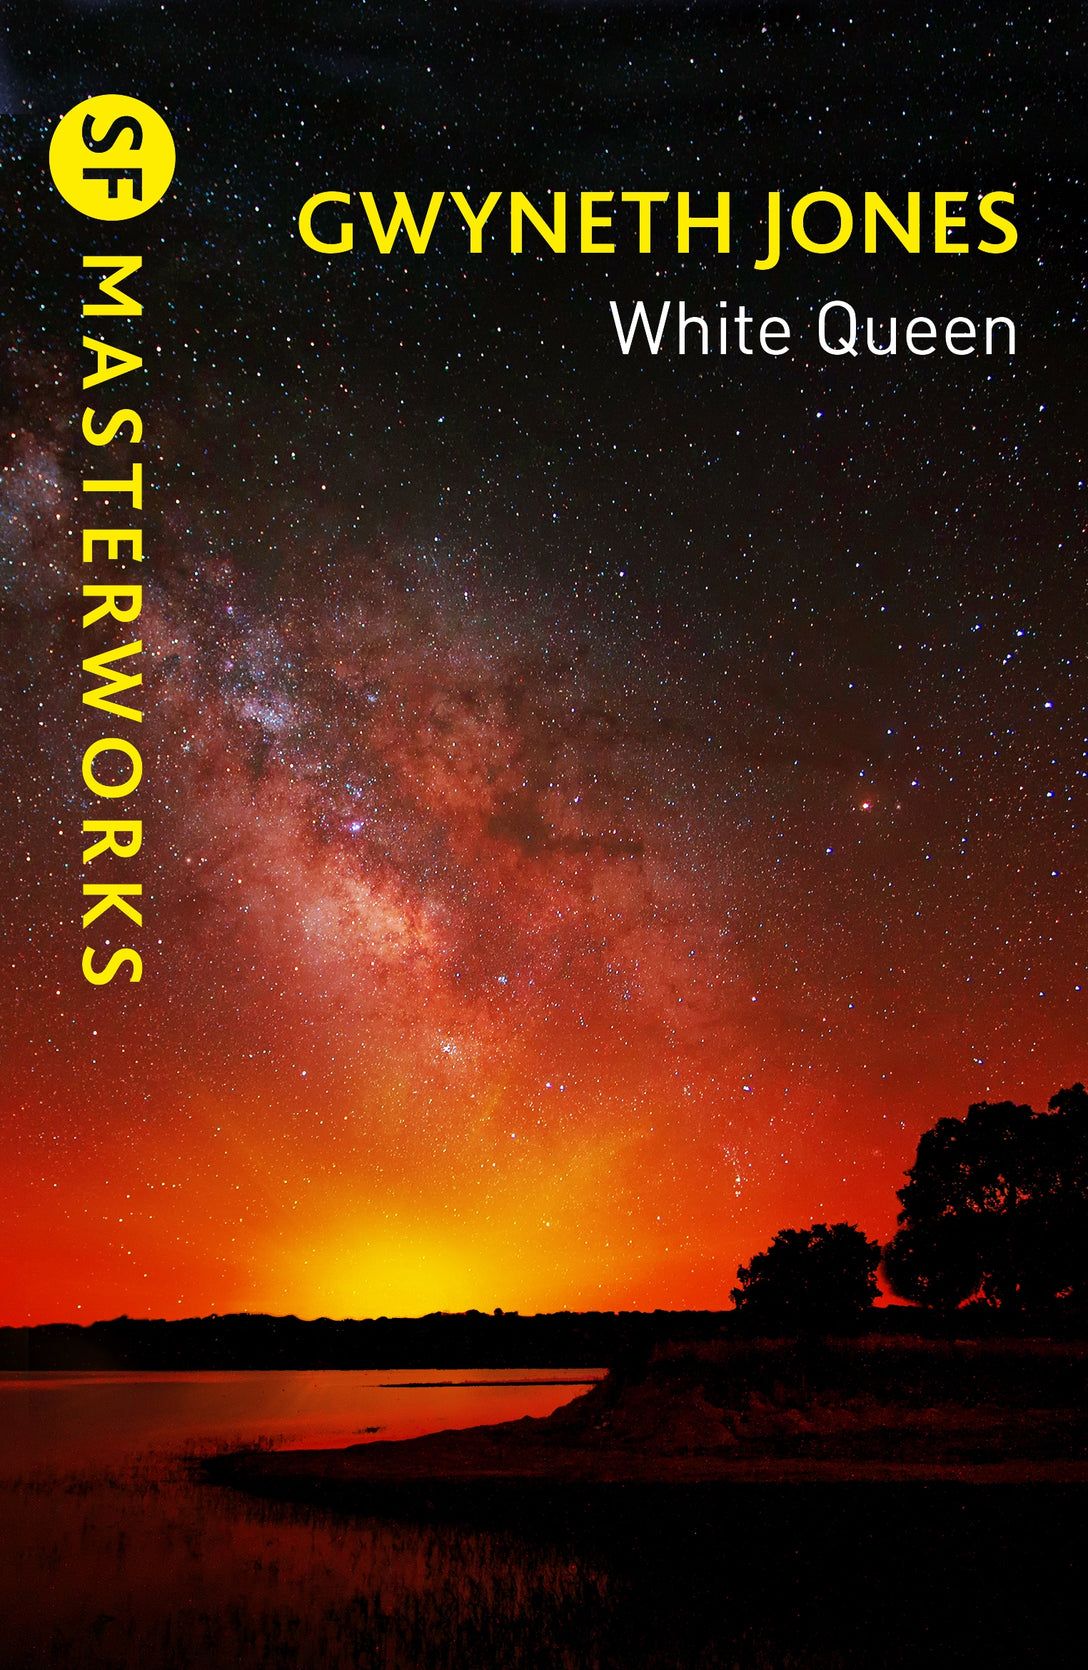 White Queen by Gwyneth Jones